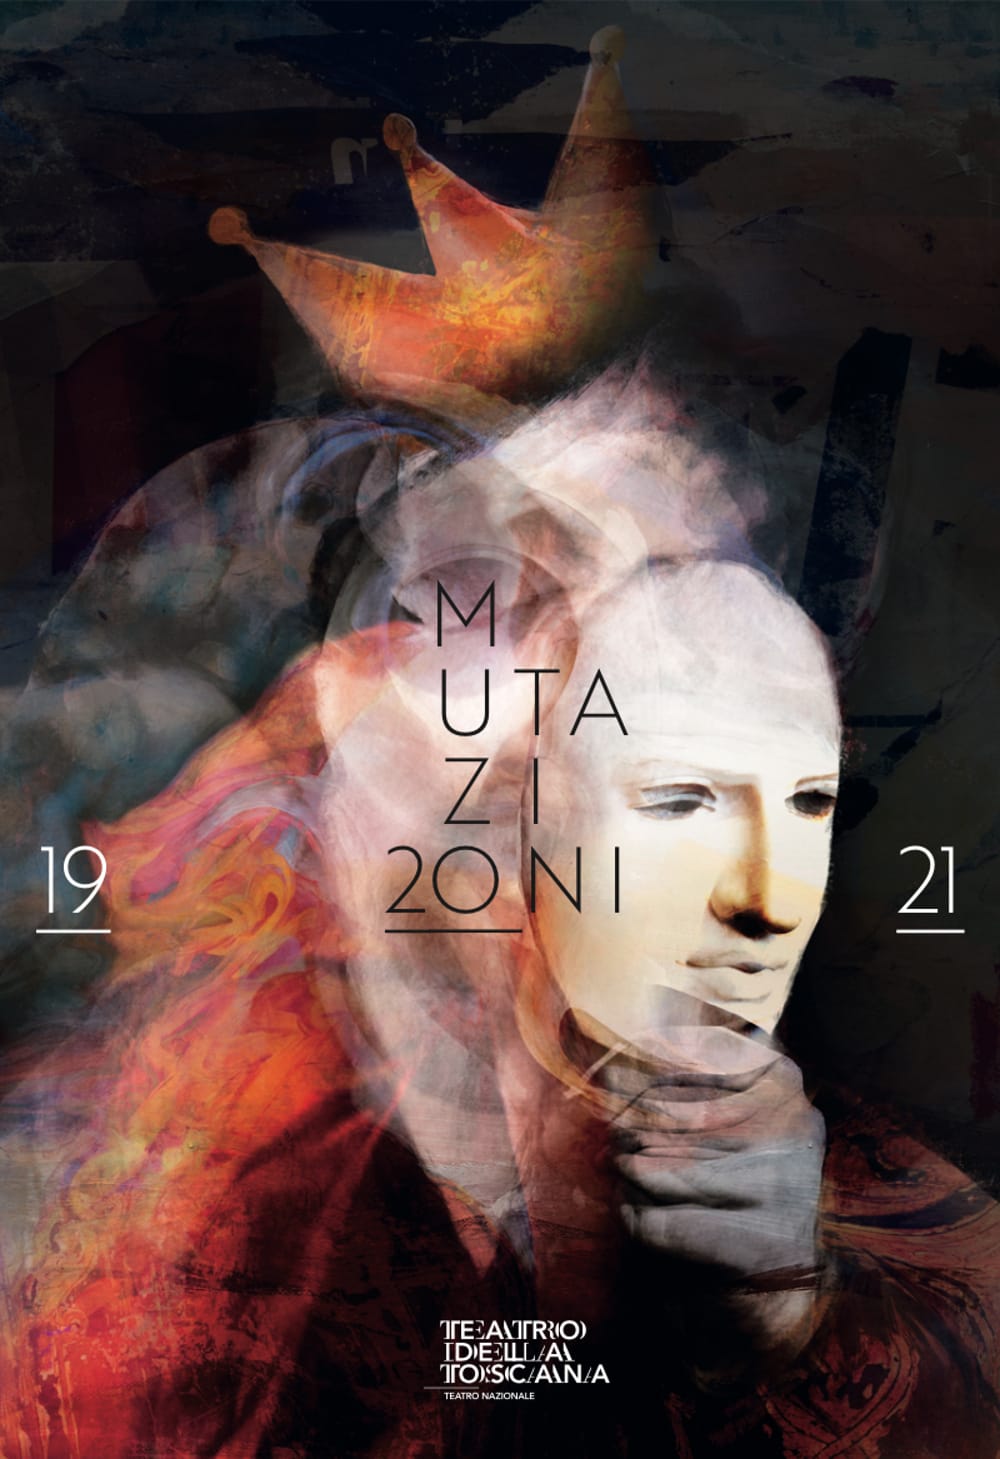 La nuova stagione del Teatro della Toscana orientata ai giovani, con 13 prime nazionali e 17 produzioni